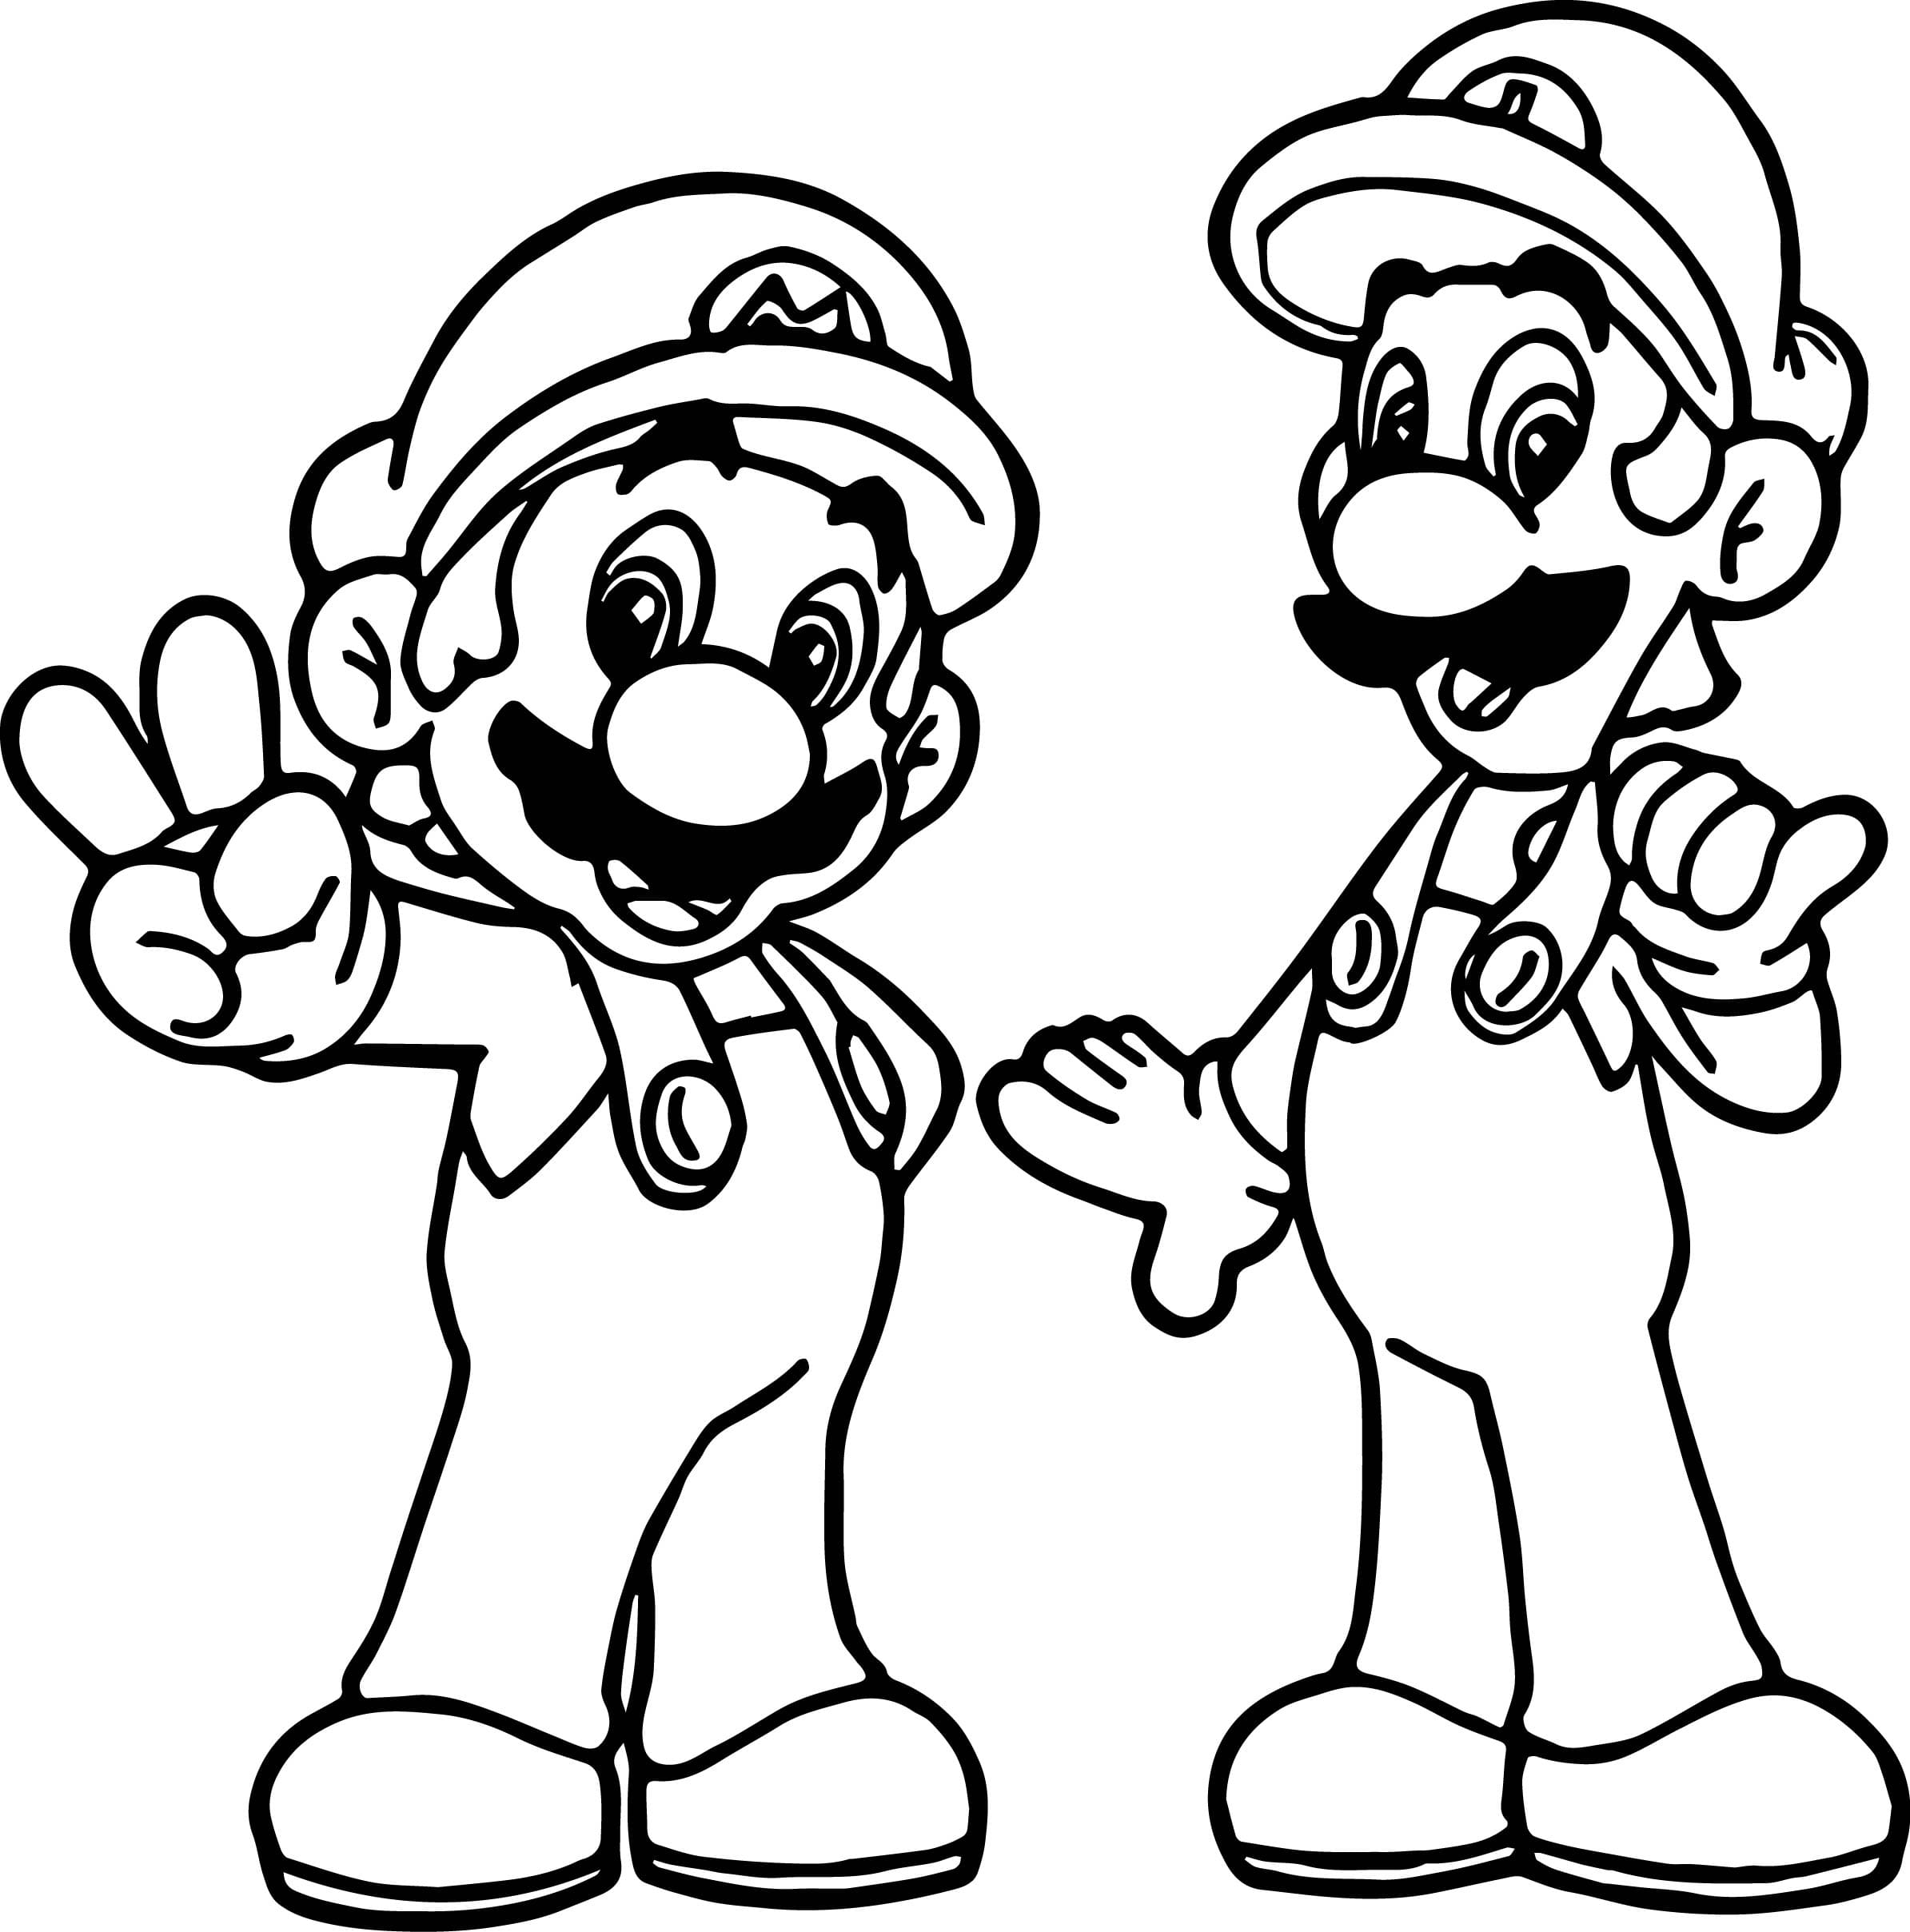 Dibujos Mario Bros para colorear - 100 imágenes se imprimen gratis